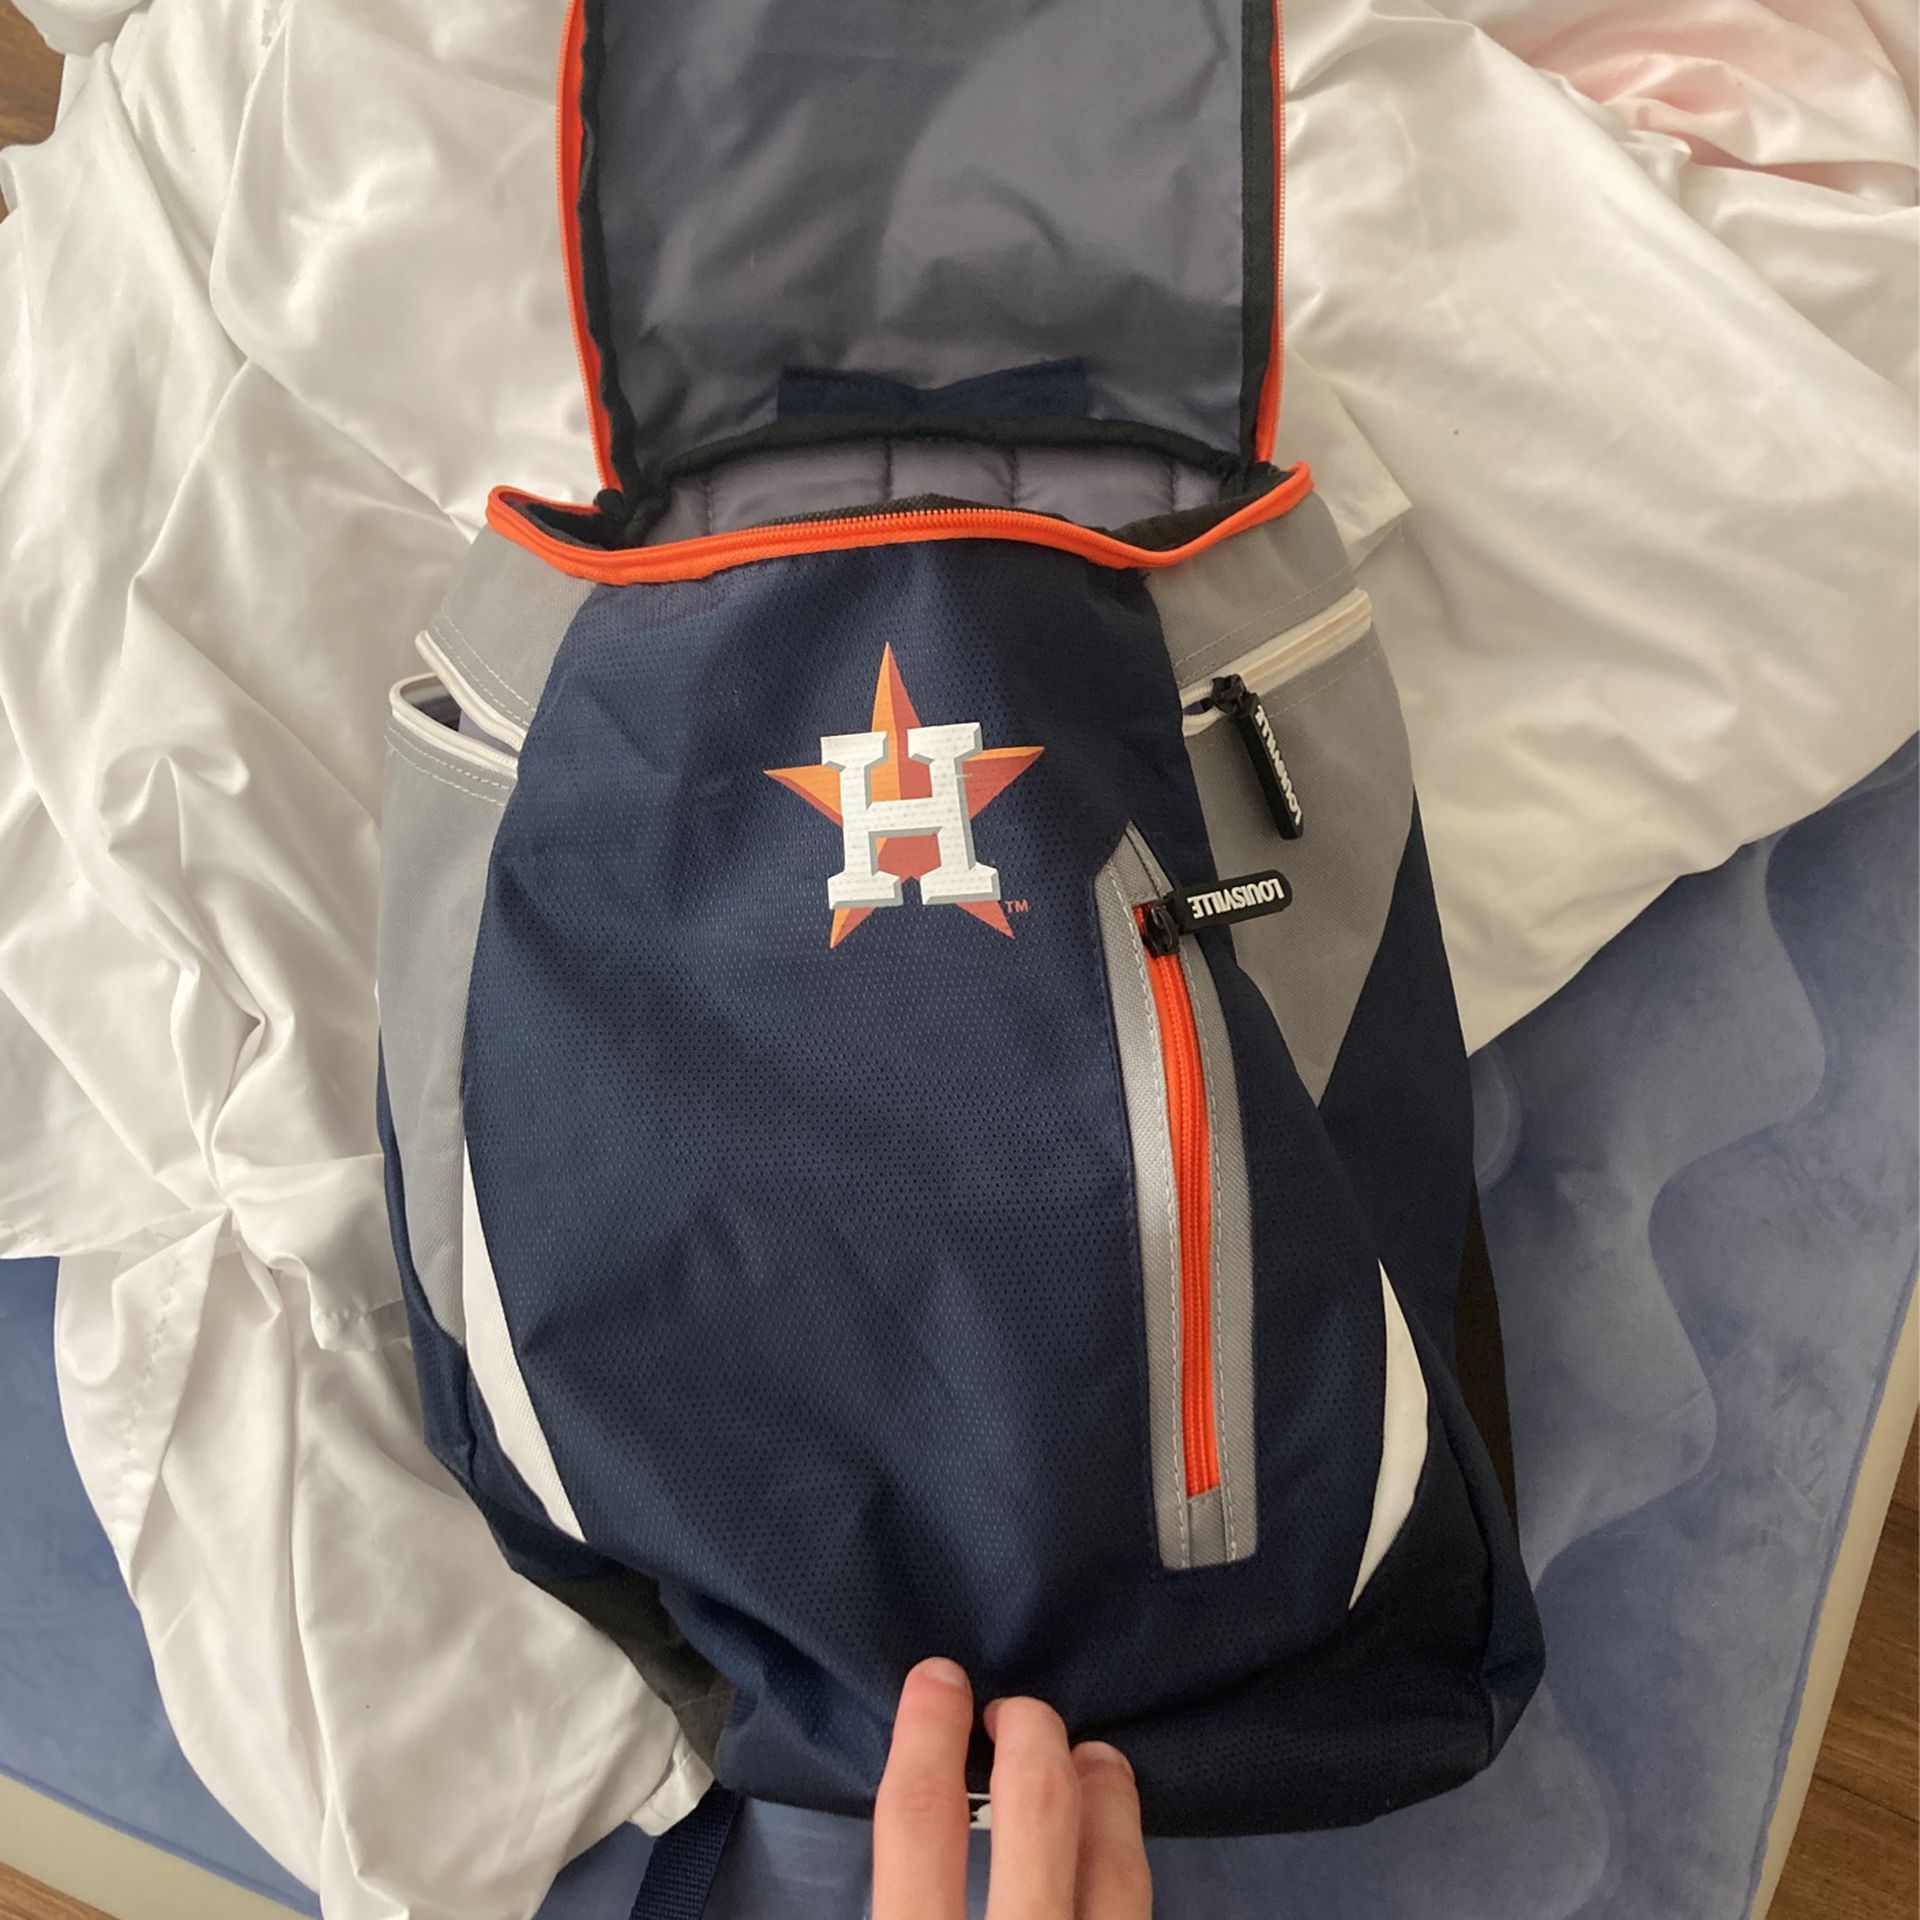 Astros Bat Bag 